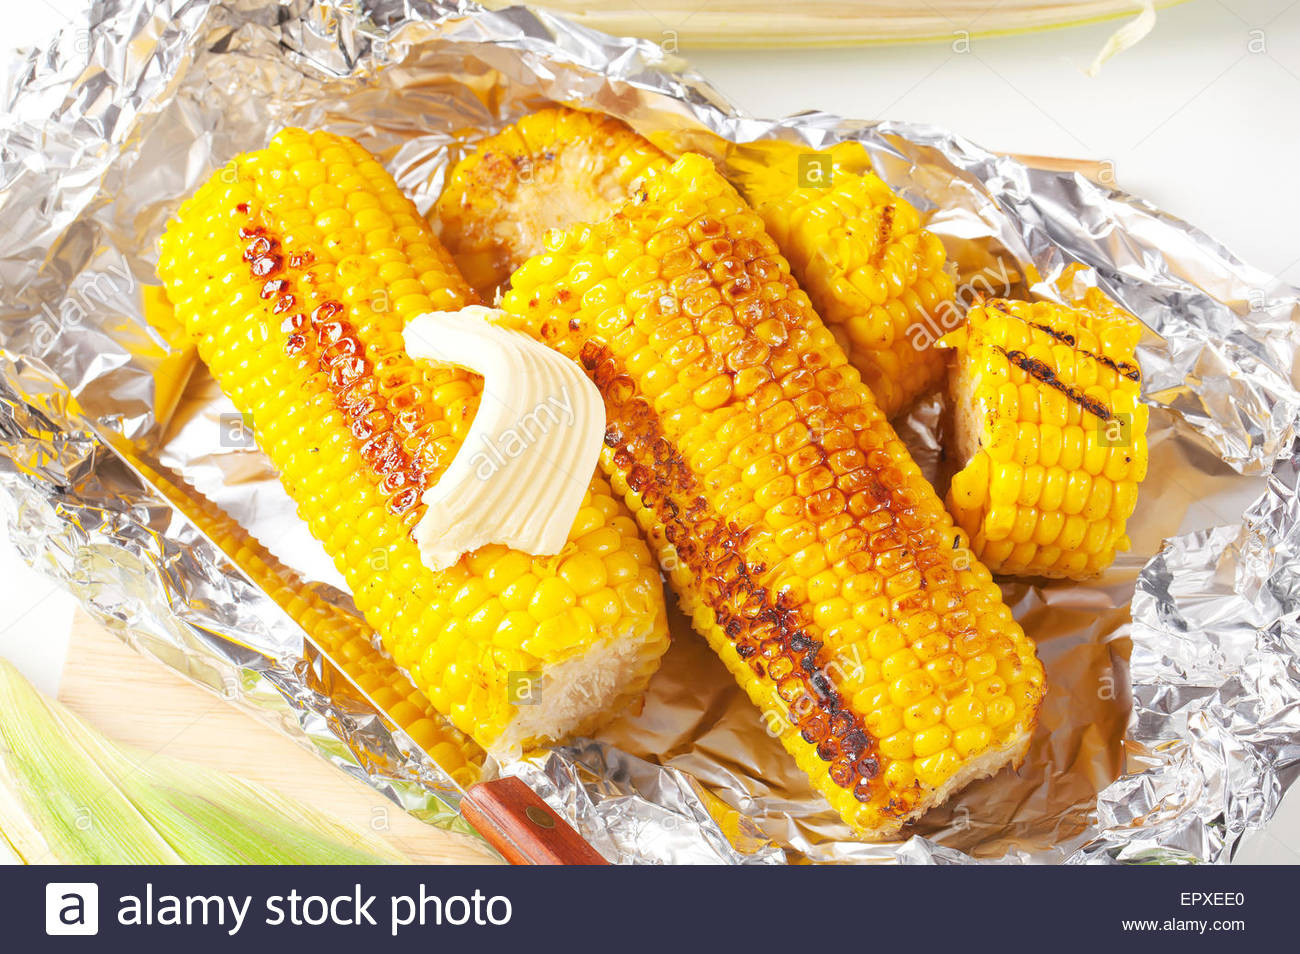 Grill Corn In Foil
 tin foil corn on grill